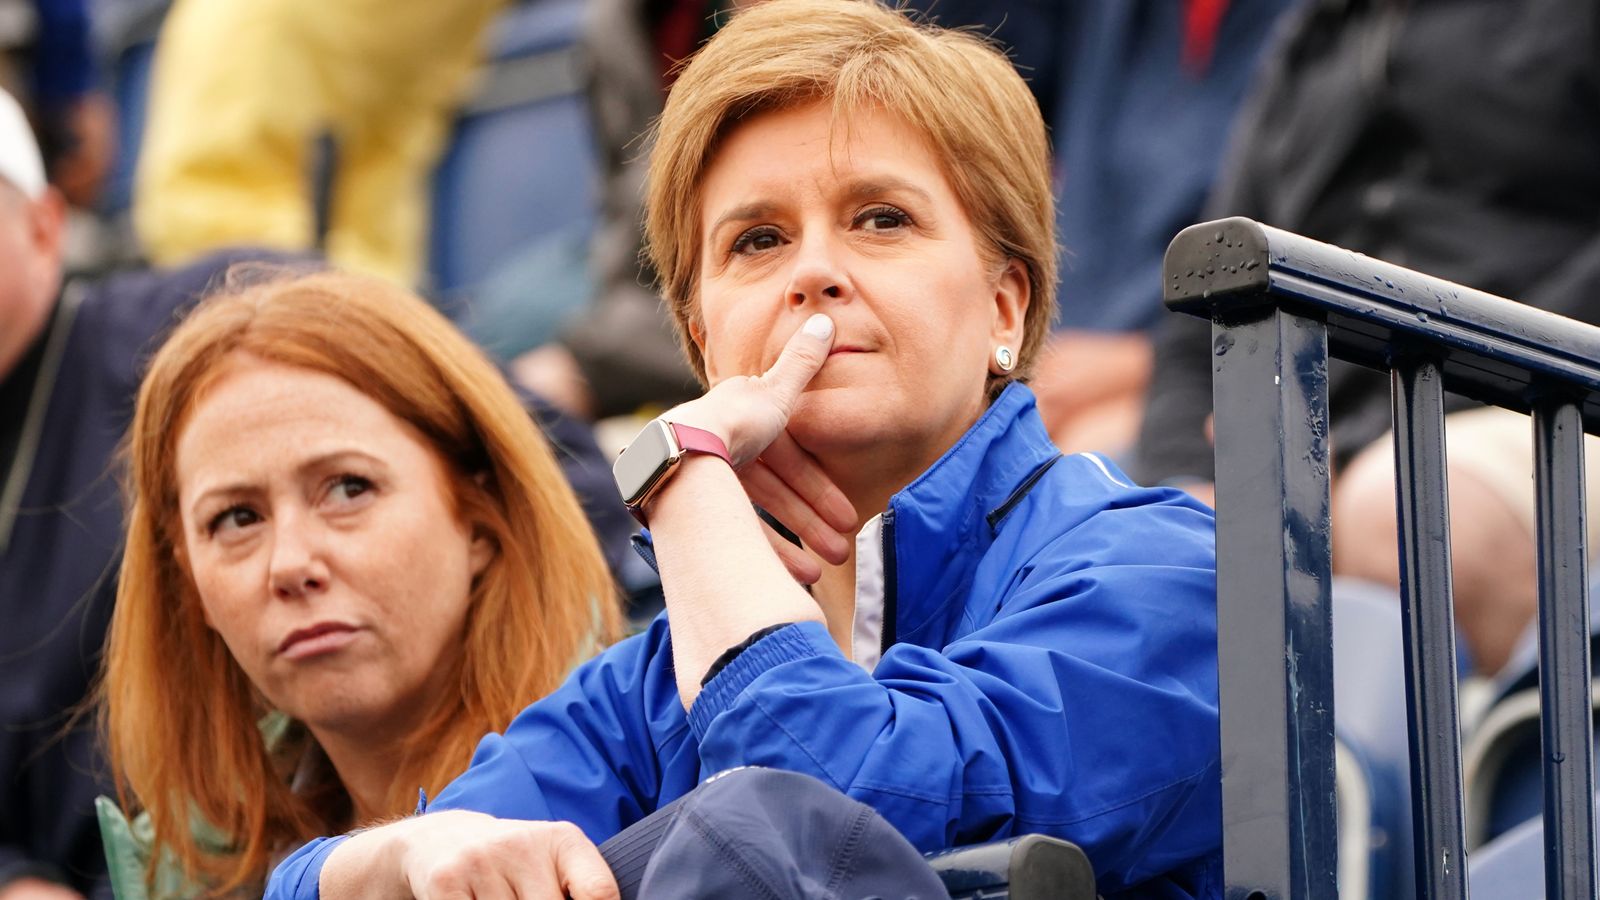 Liz Truss dit à Nicola Sturgeon d’arrêter de “faire de l’agitation” pour un autre référendum sur l’indépendance écossaise |  Politique Nouvelles